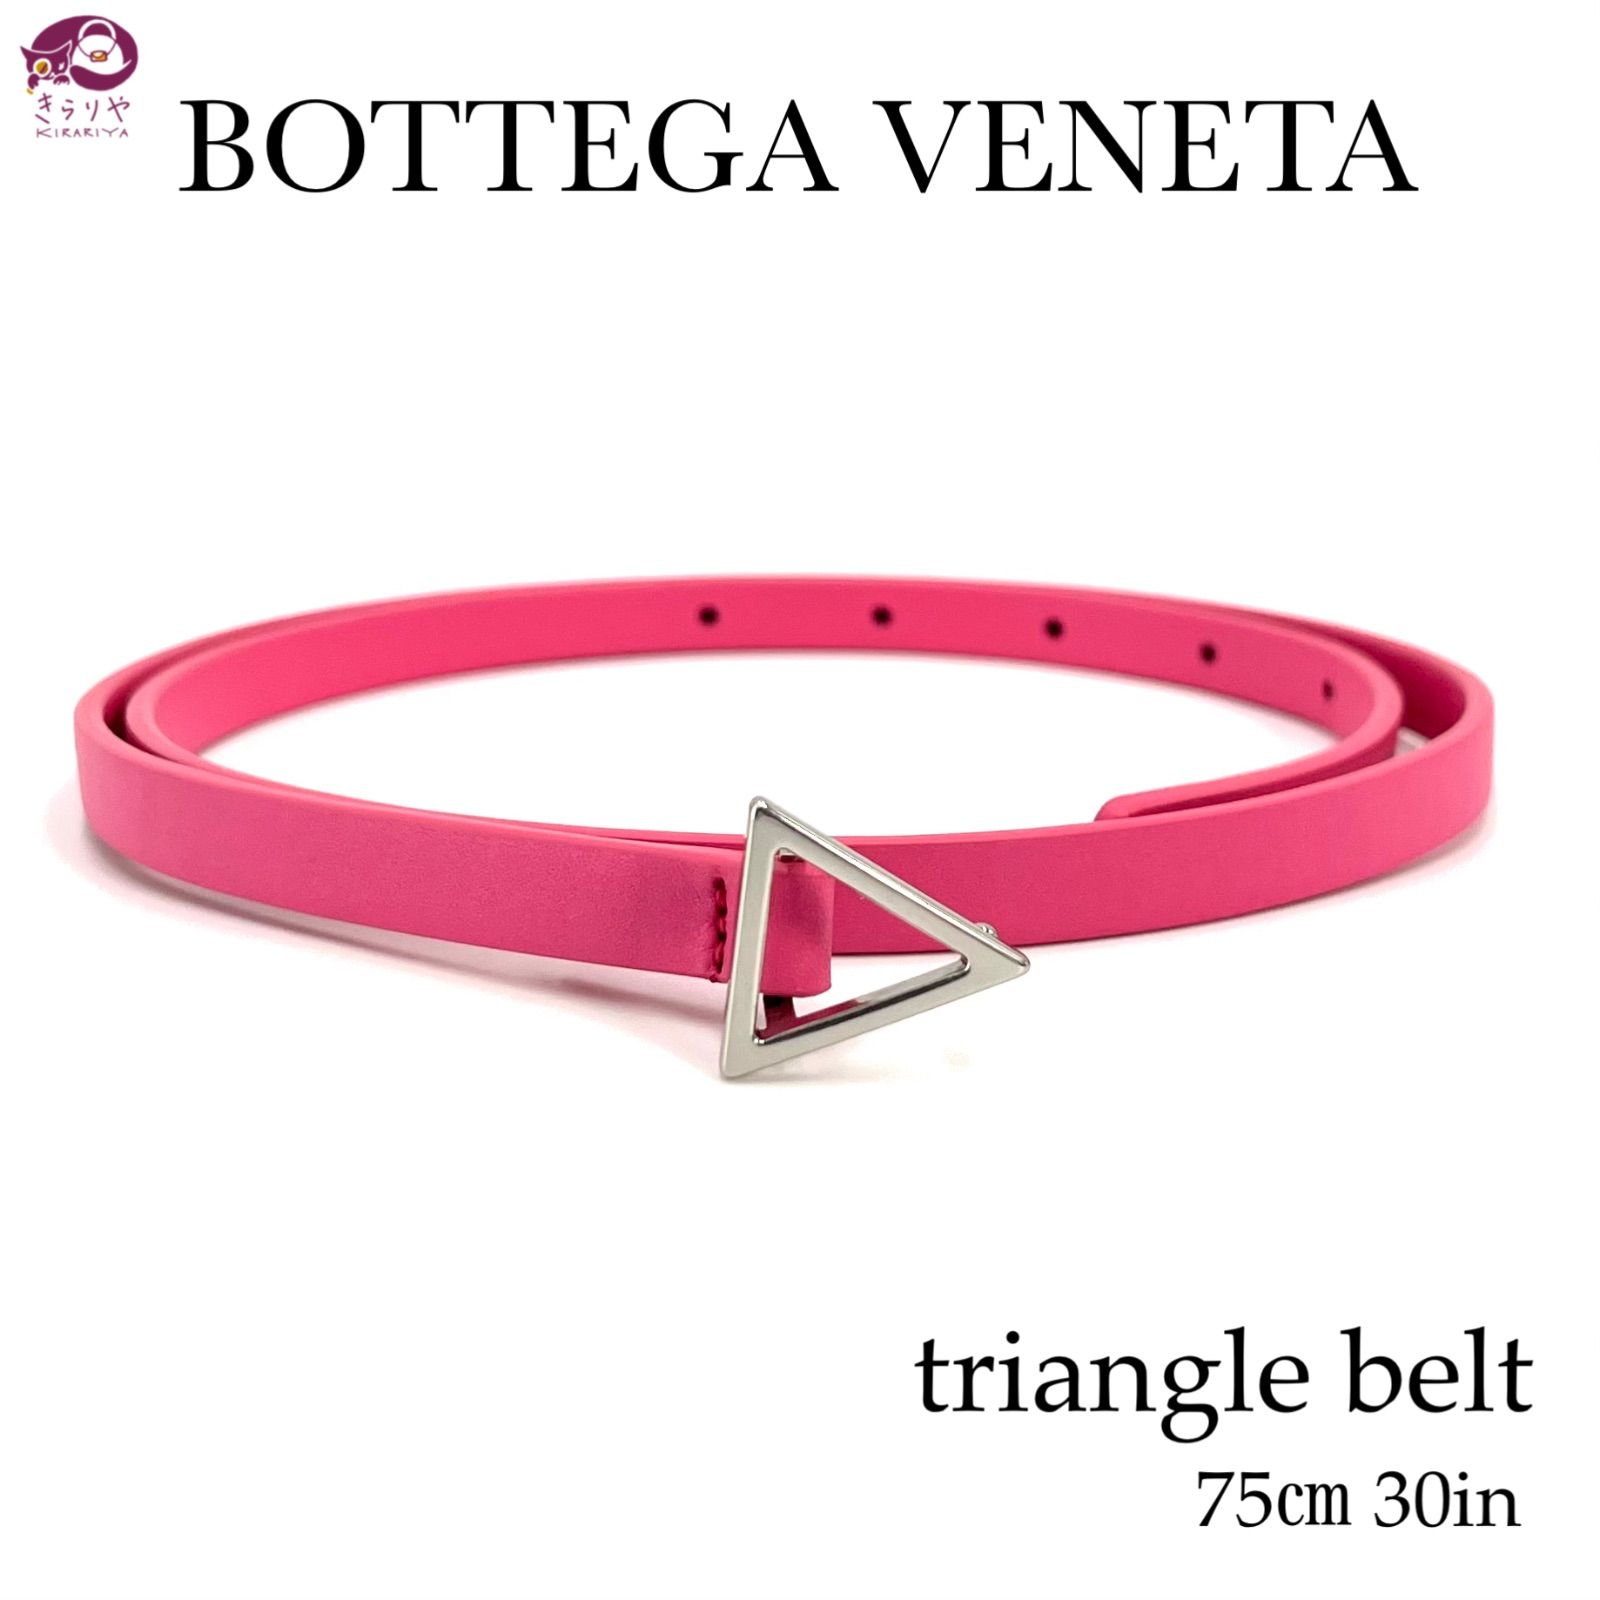 BOTTEGA VENETA ボッテガ ヴェネタ トライアングル ベルト レディース カーフレザー 75㎝ 30IN ピンクロージャー ピンク  シルバー金具 イタリア製